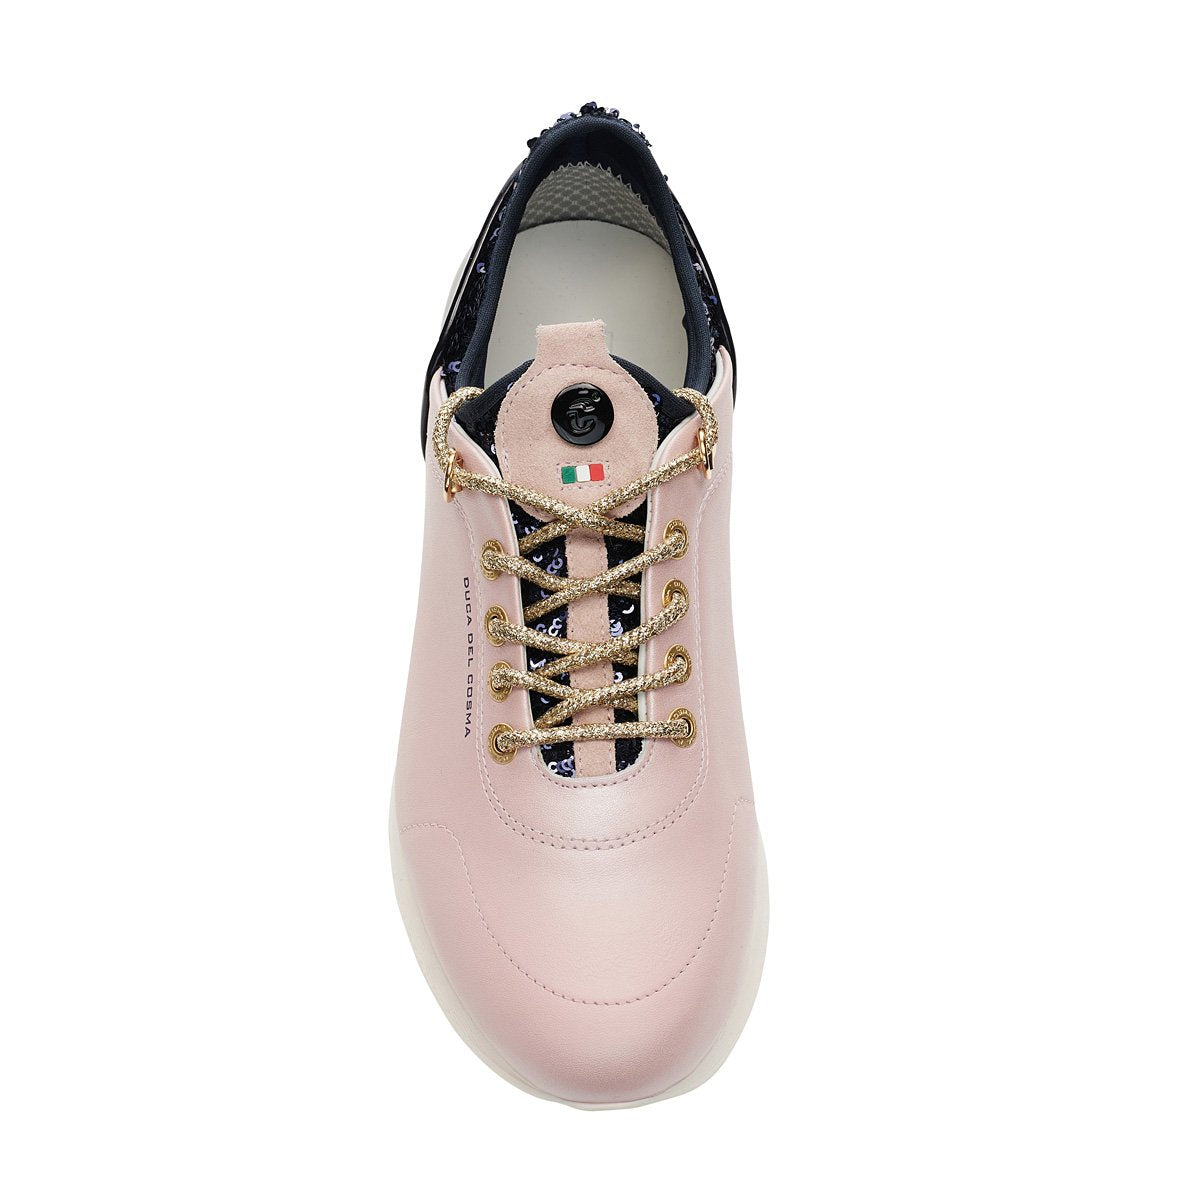 Pose Pink/Navy Women's Golf Shoe 